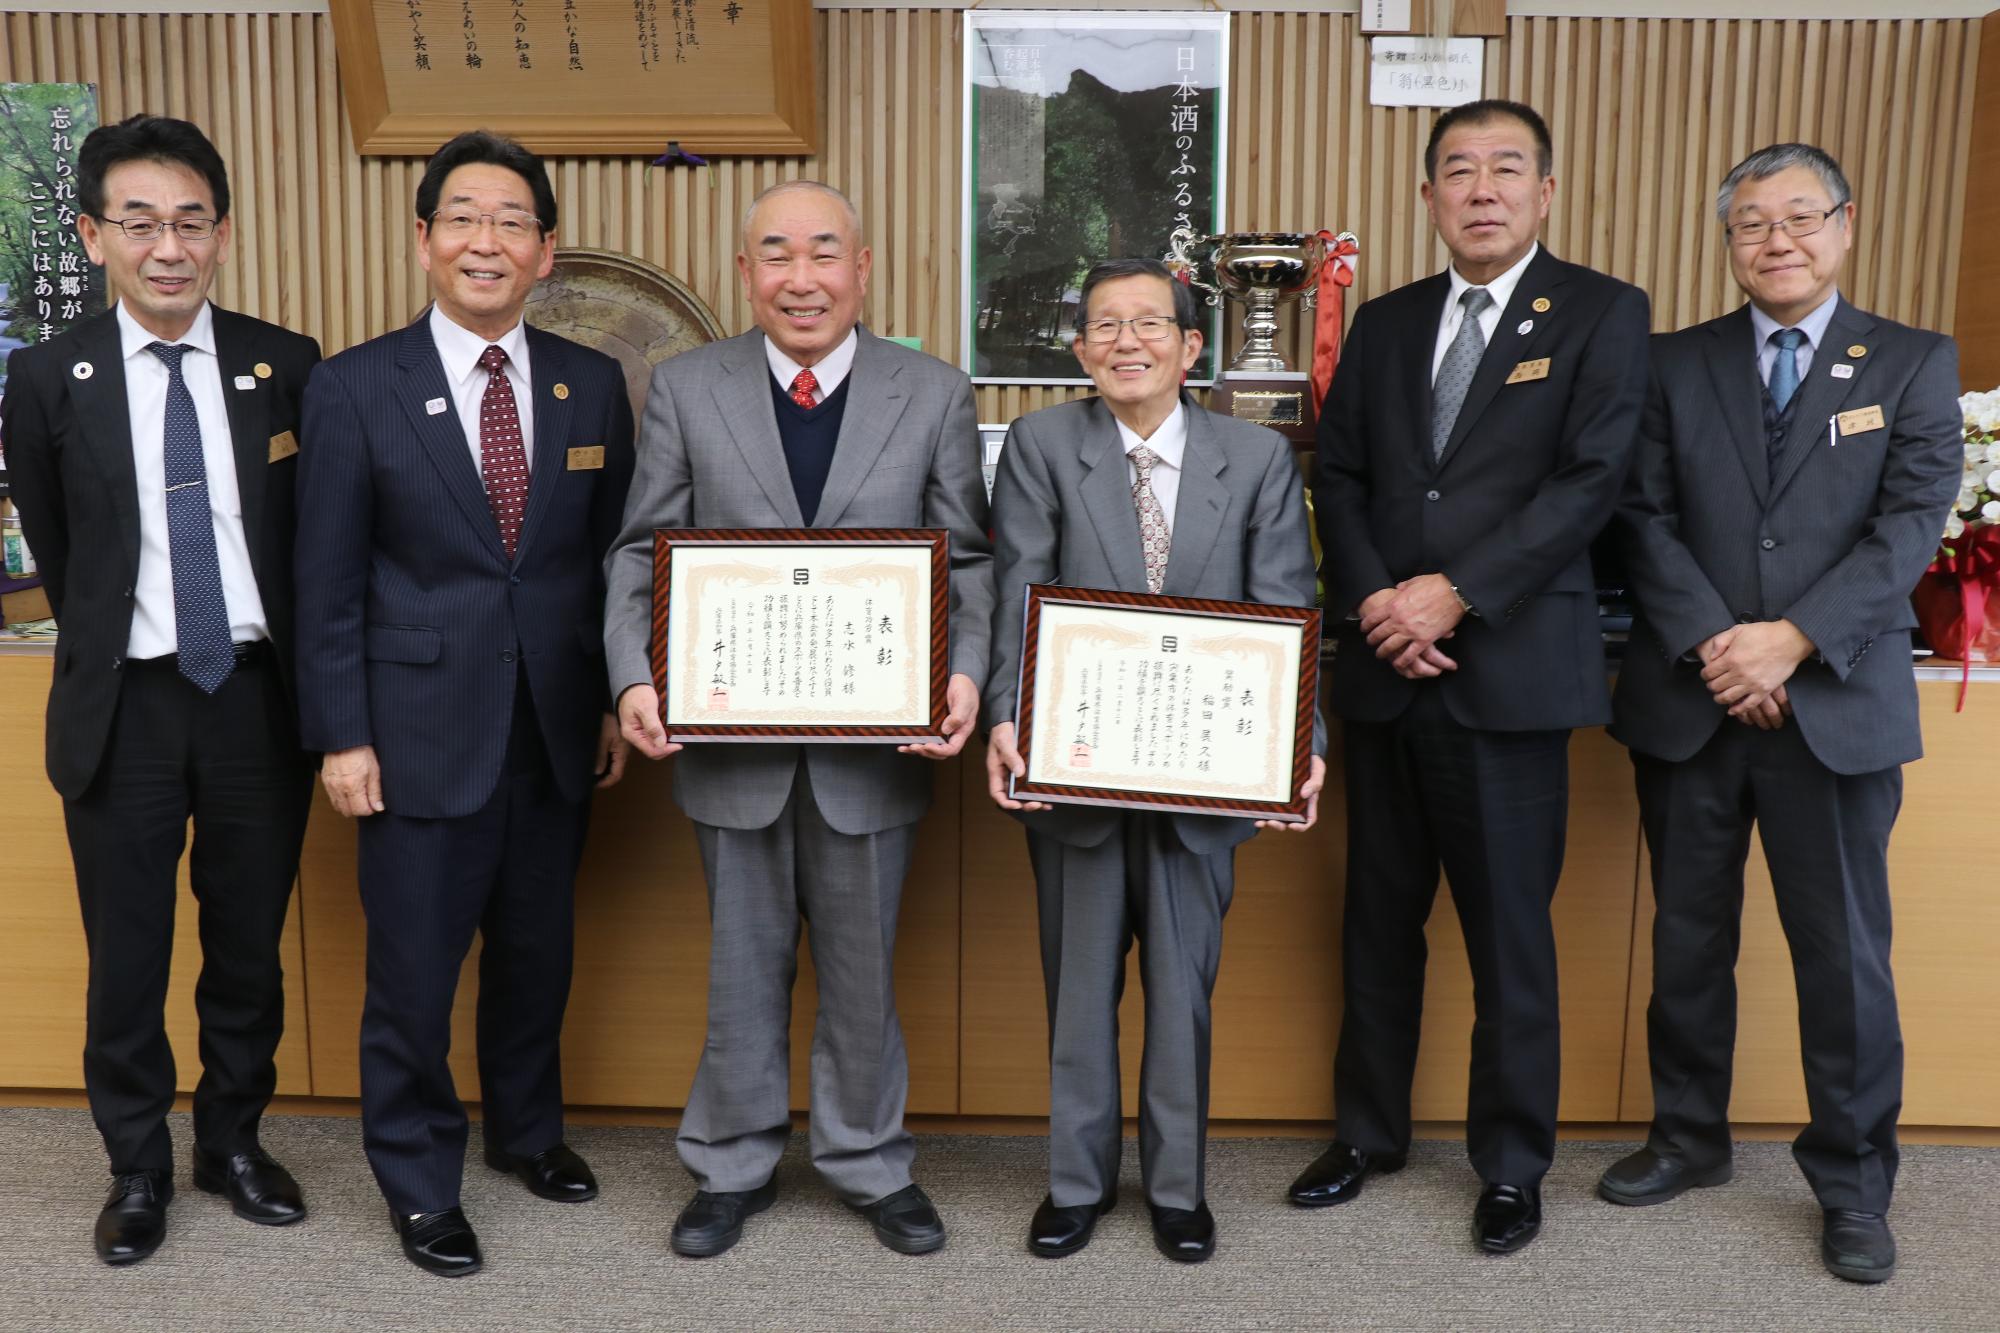 志水会長、稲田顧問中心に左から副市長、市長、教育長、まちづくり推進部長が並ぶ写真